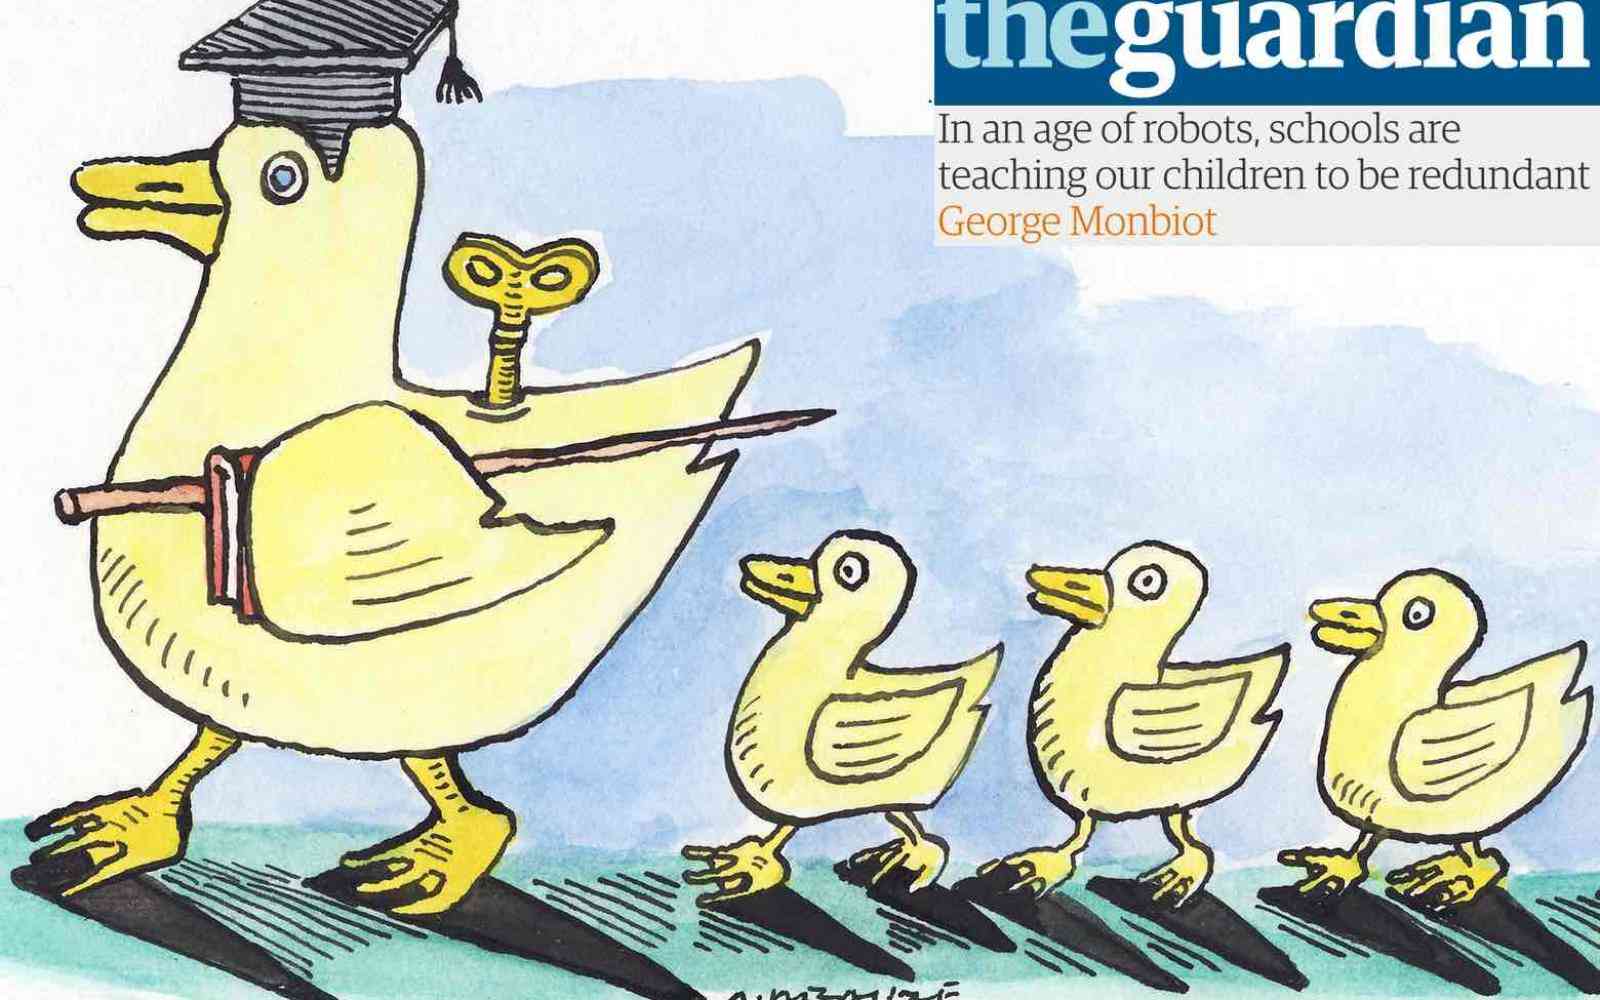 The Guardian - Changemaker Schools